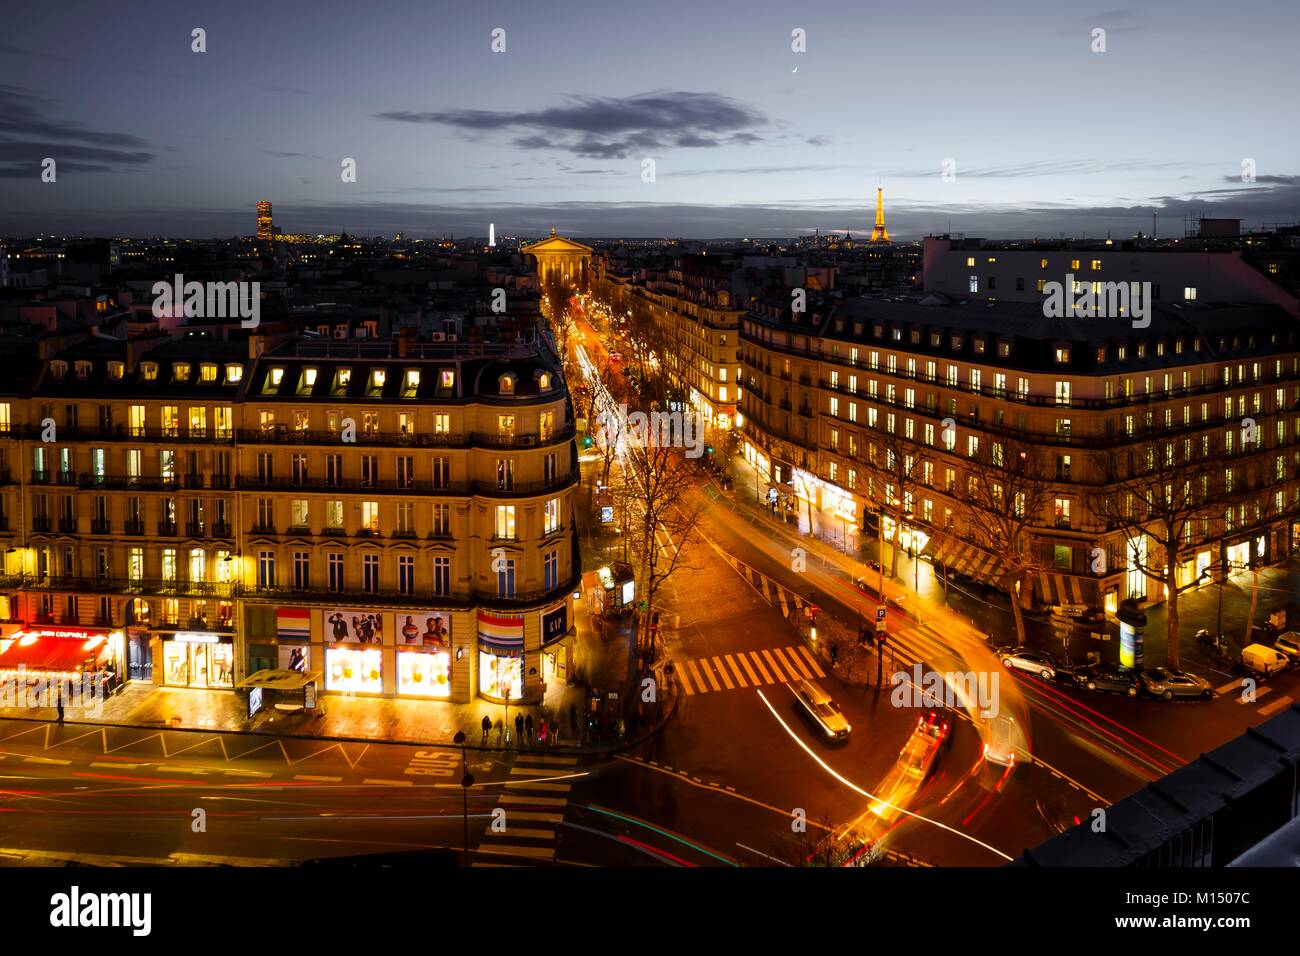 Via aerea in scena a Parigi di notte illuminata con edifici storici, negozi e una strada molto trafficata con percorsi di luce dal traf in movimento Foto Stock